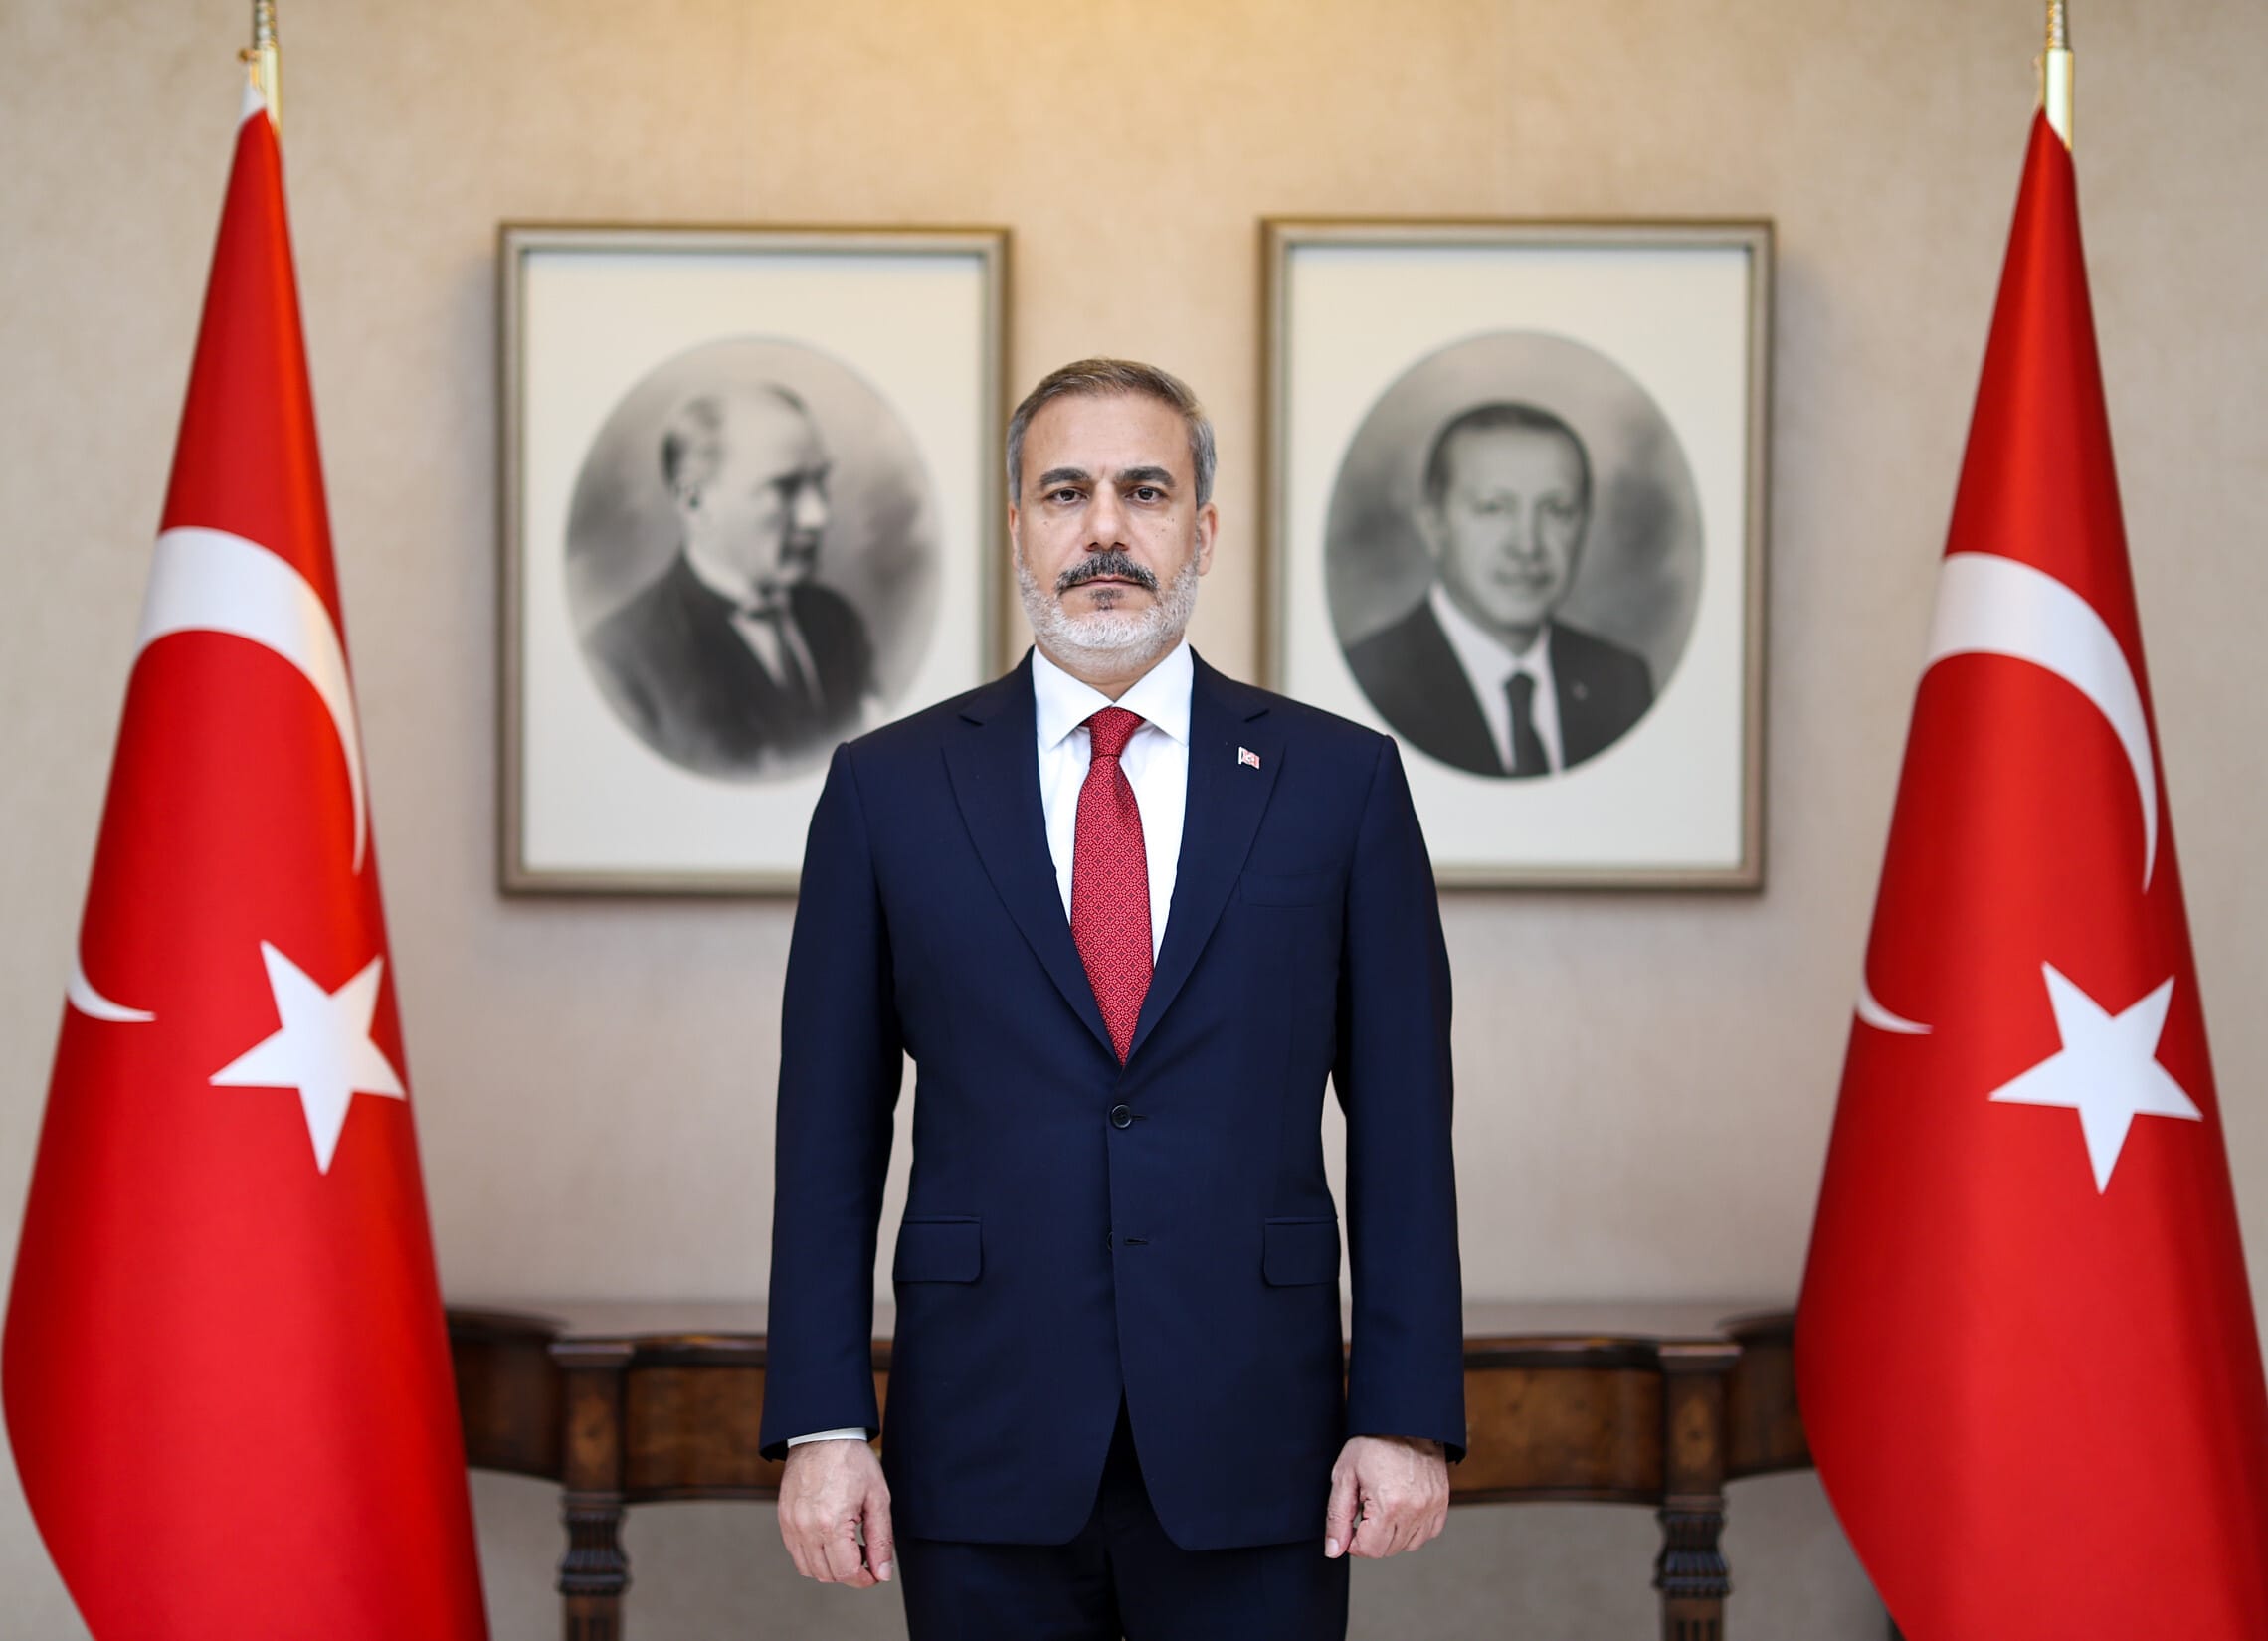 שר החוץ הנכנס של טורקיה האקאן פידן במשרדו החדש באנקרה, 5 ביוני 2023 (צילום: Murat Gök/Anadolu Agency)